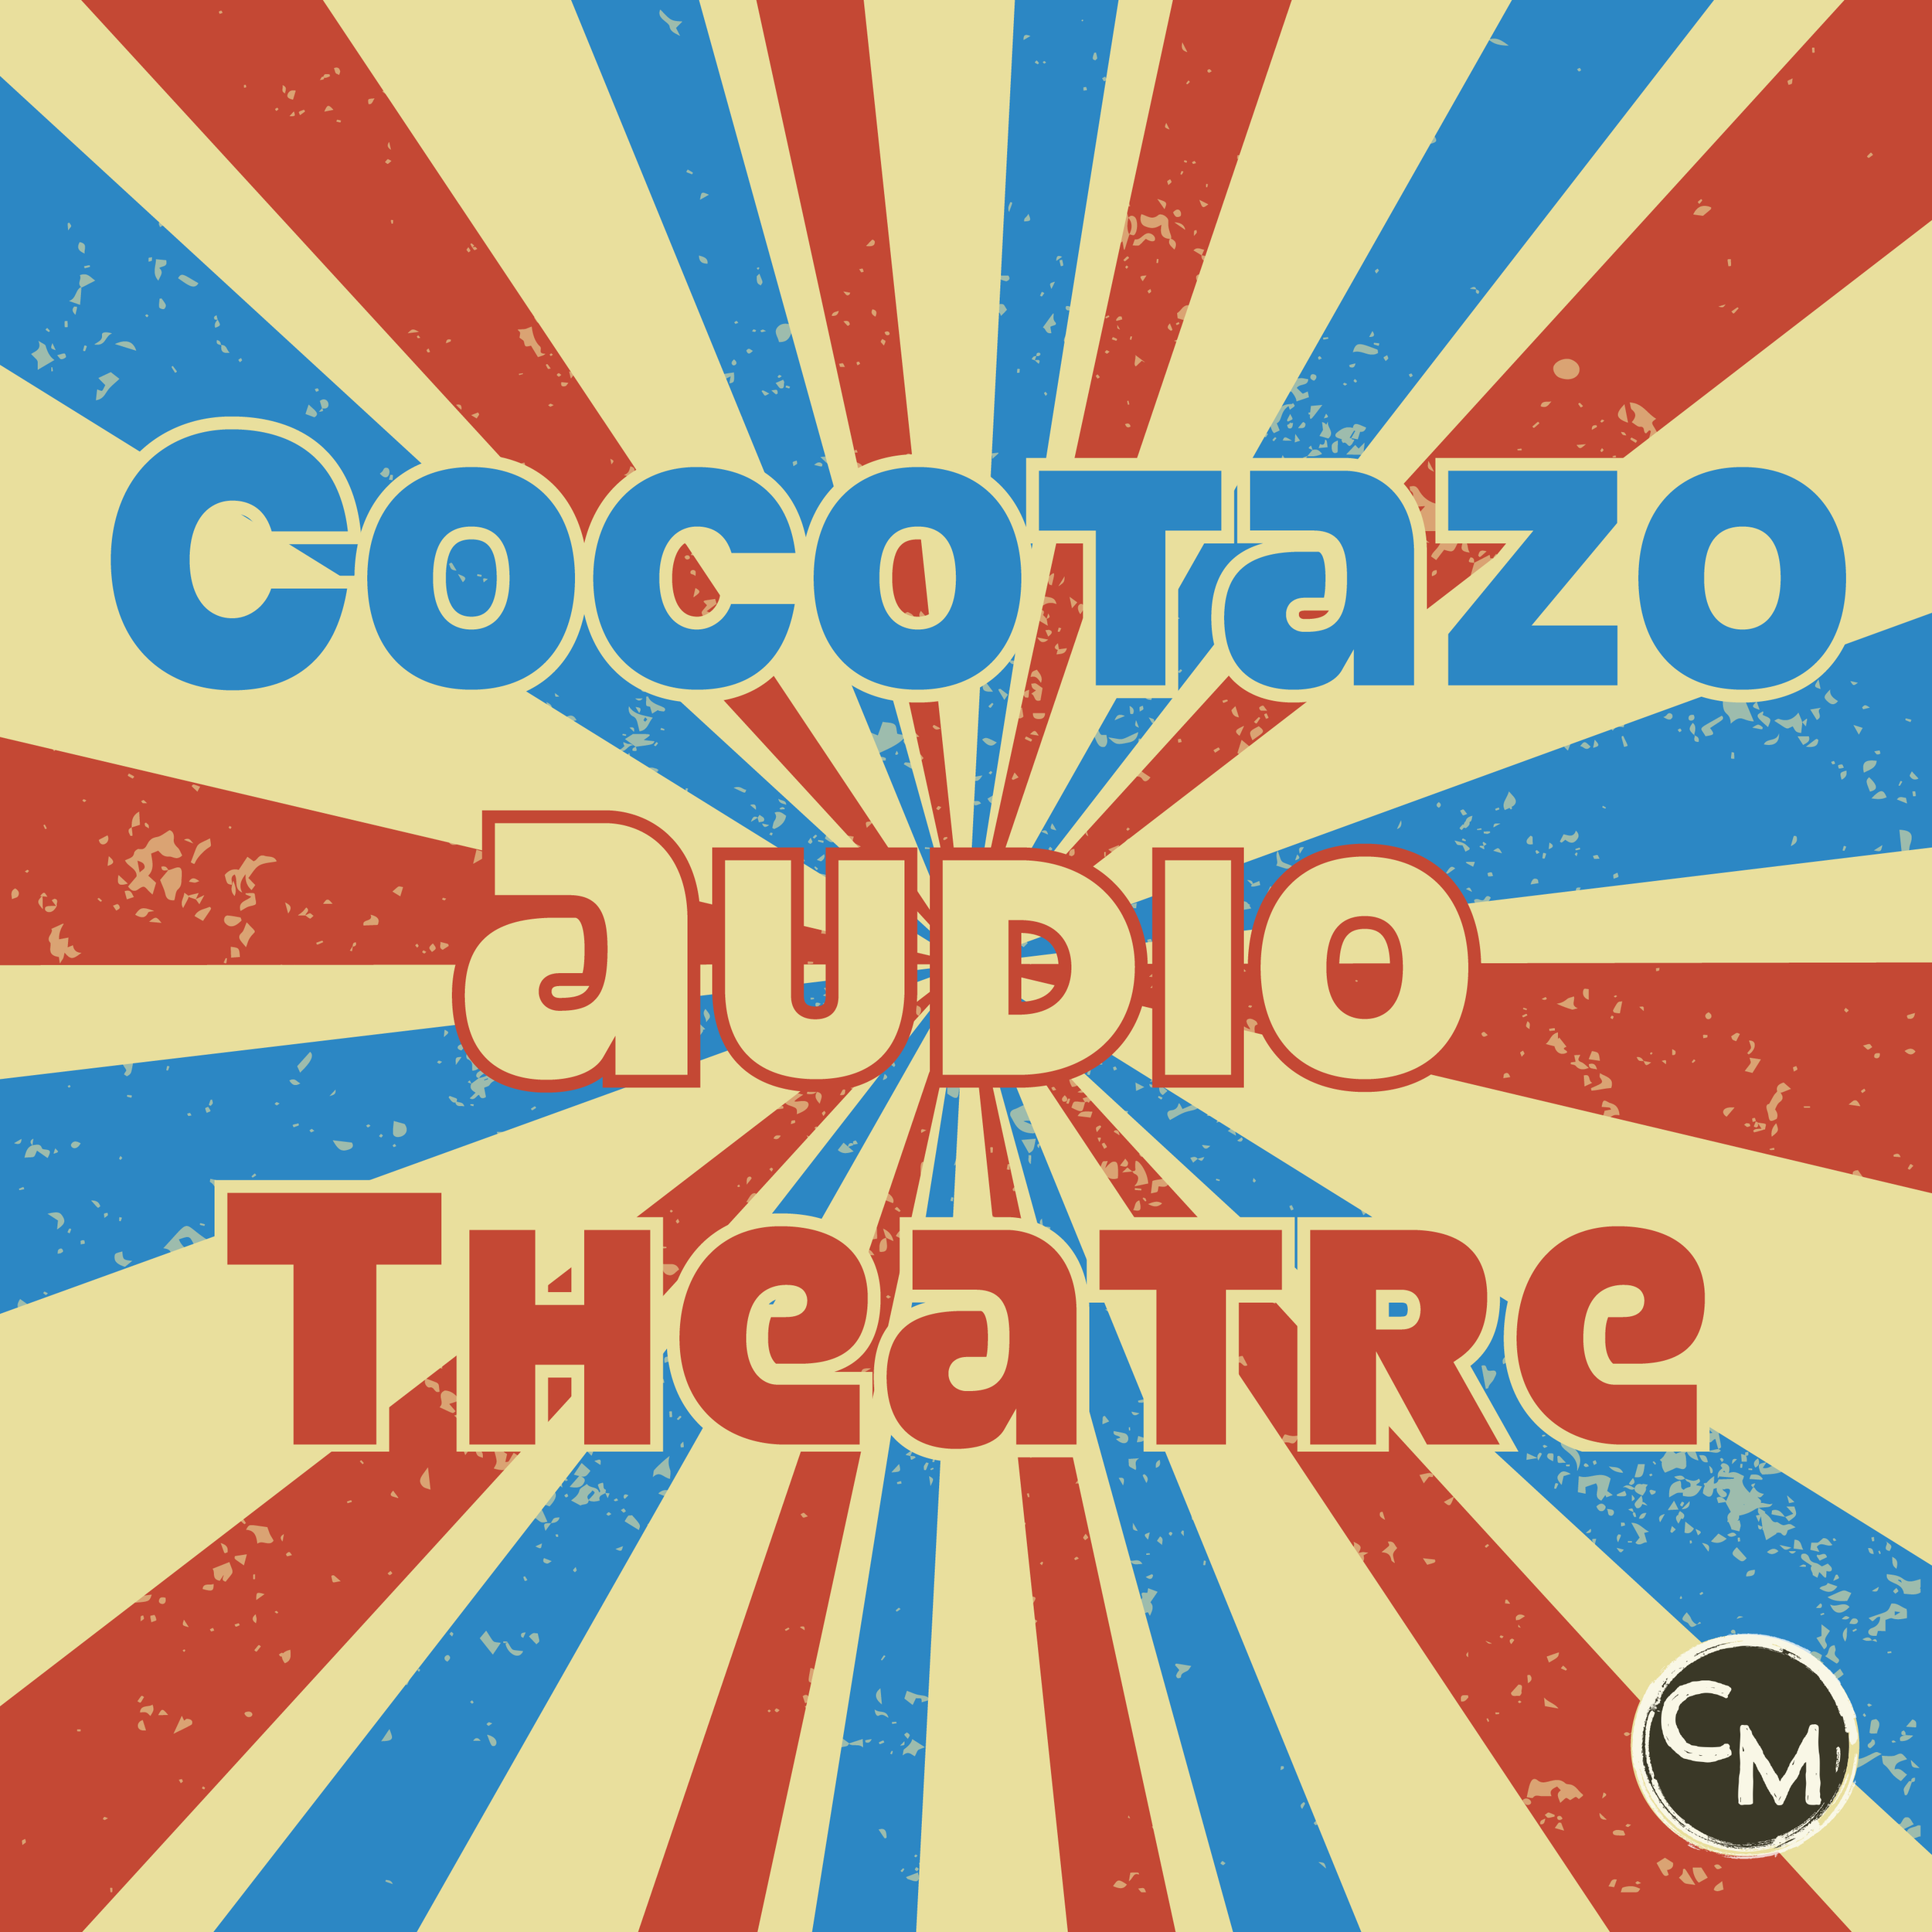  Cocotazo Audio Theatre art.  Background: starline; Design: M. Aquino 